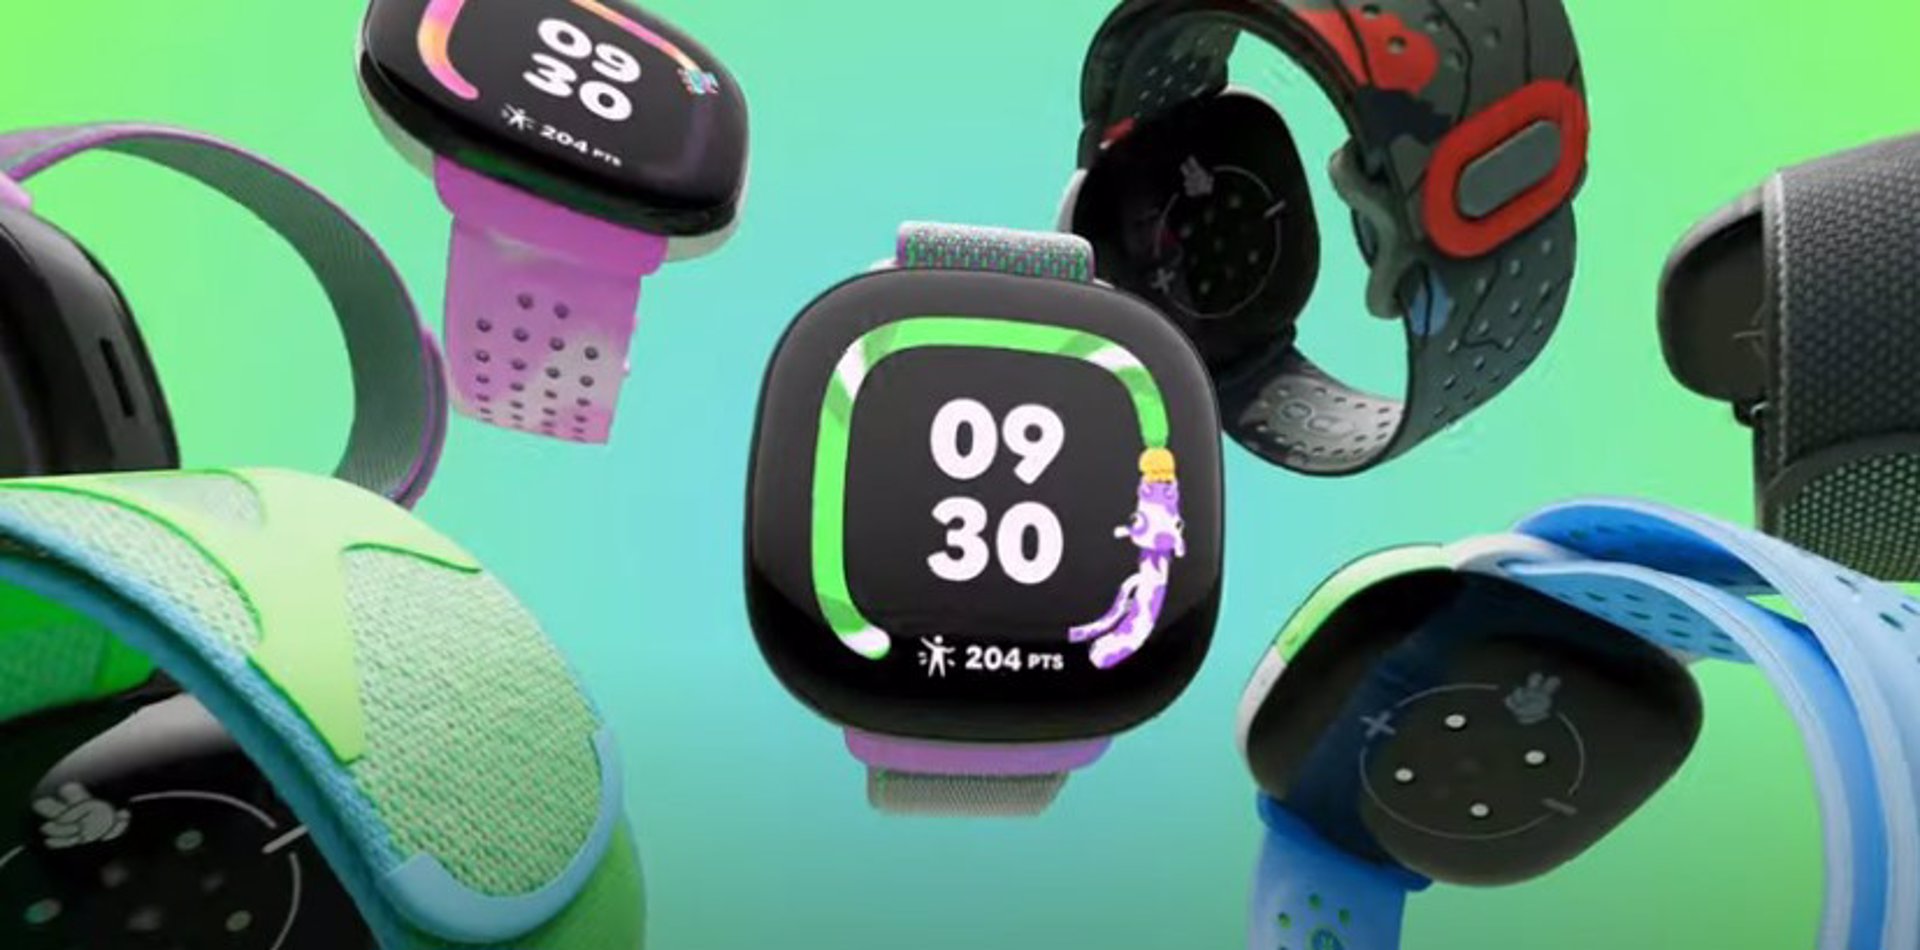 Así es el nuevo Fitbit Ace LTE, el ‘smartwatch’ que fomenta un estilo de vida activo en los niños a través de juegos